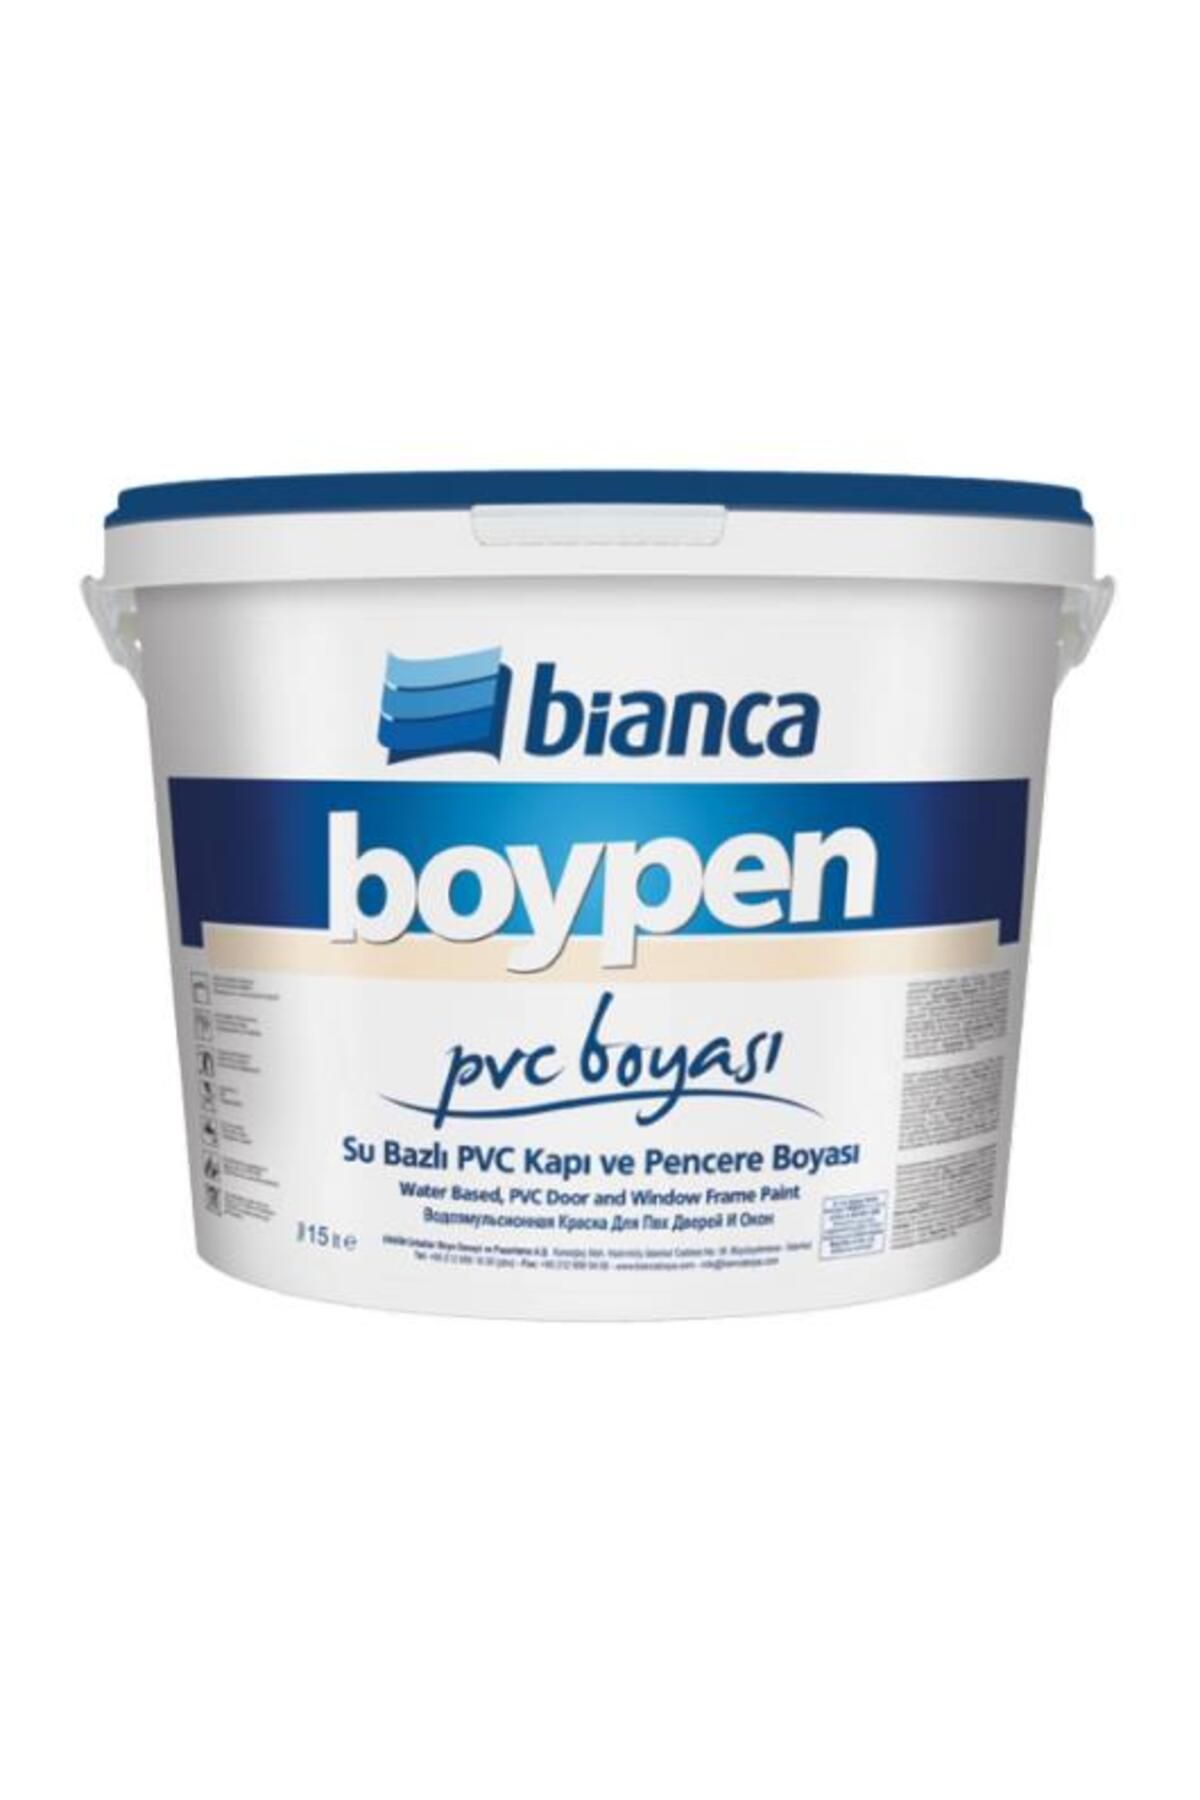 Bianca Boypen Pvc Boyası Beyaz 0,75 Lt